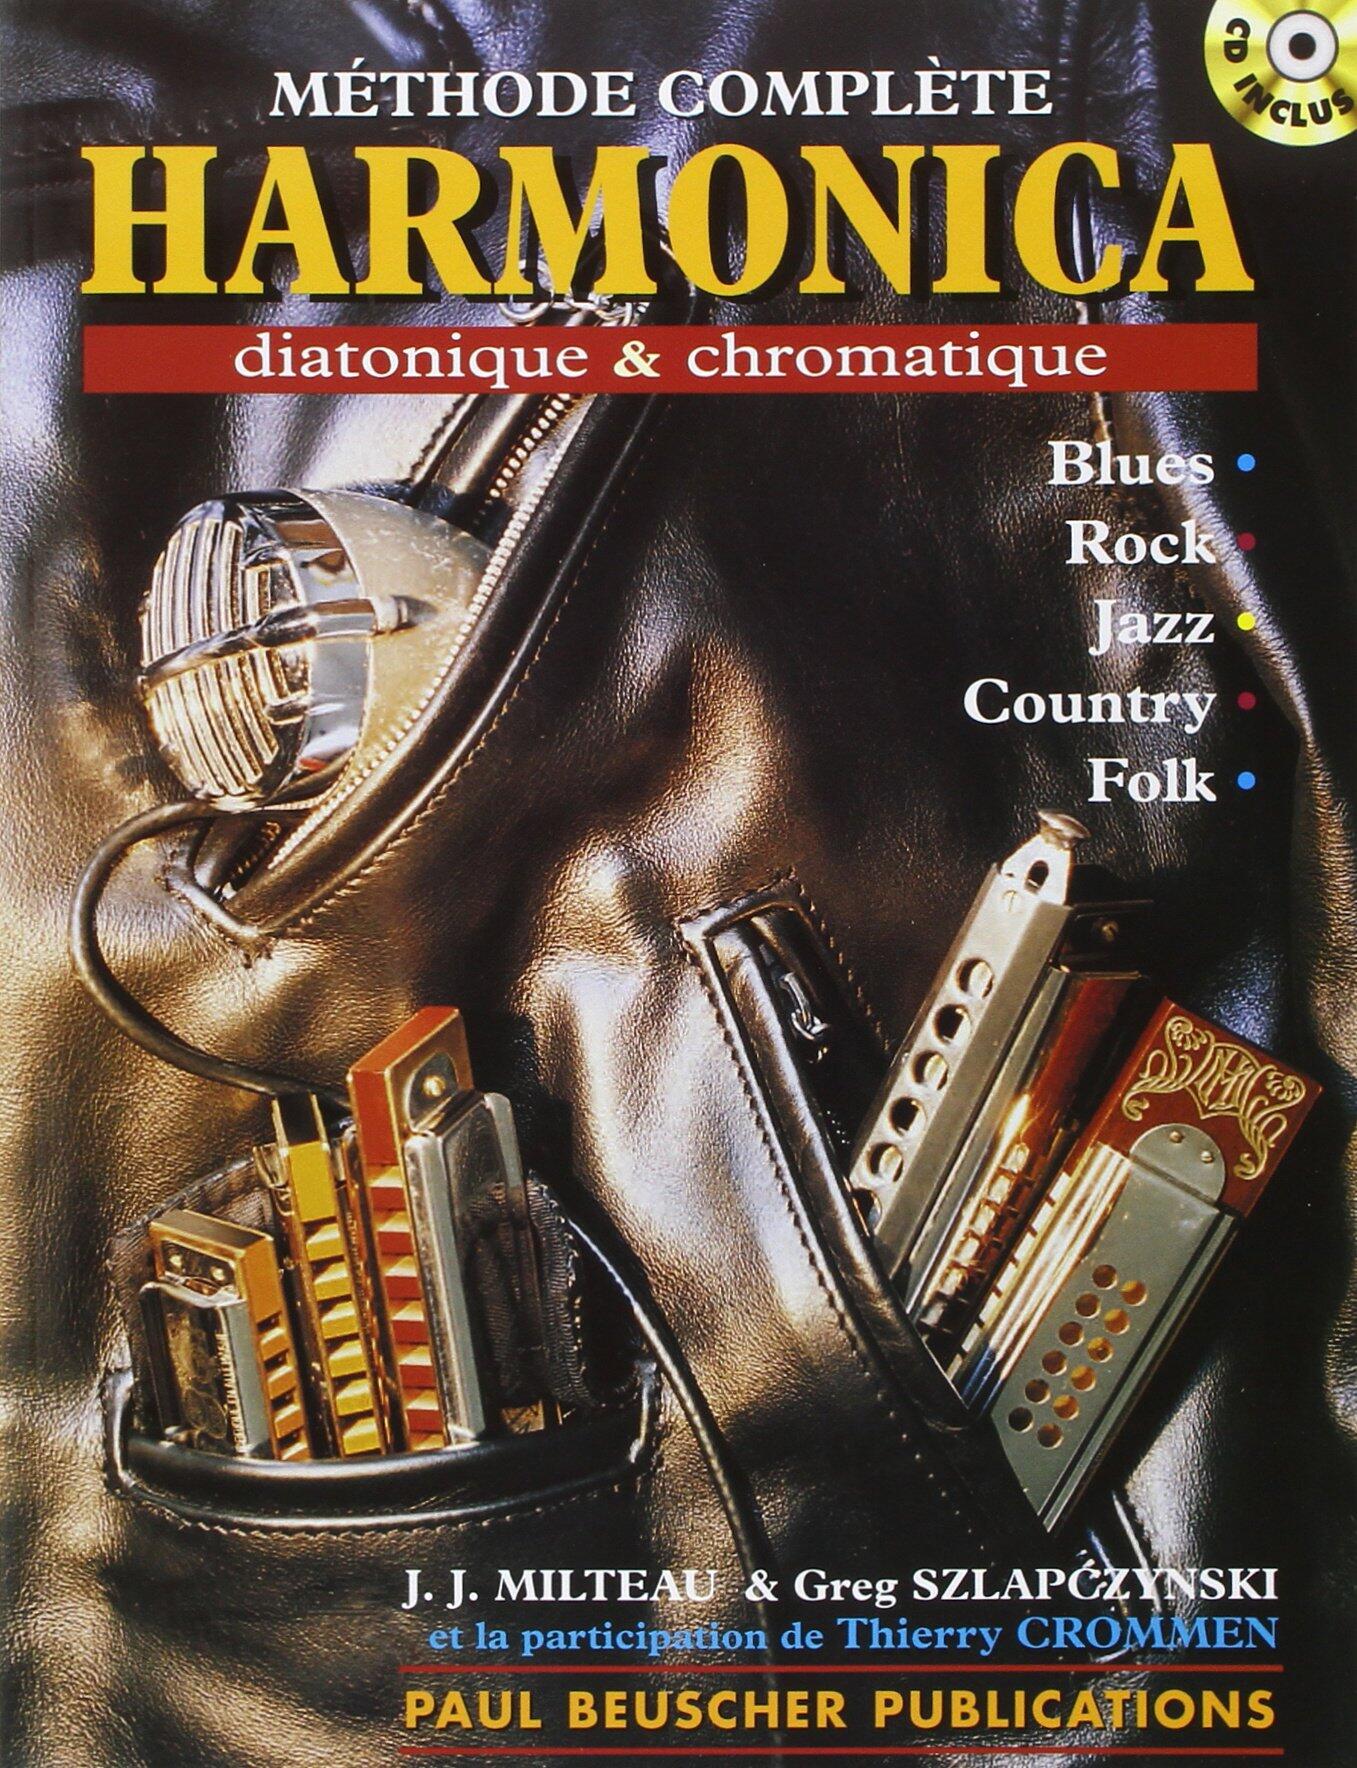 Harmonica diatonique et chromatique : photo 1